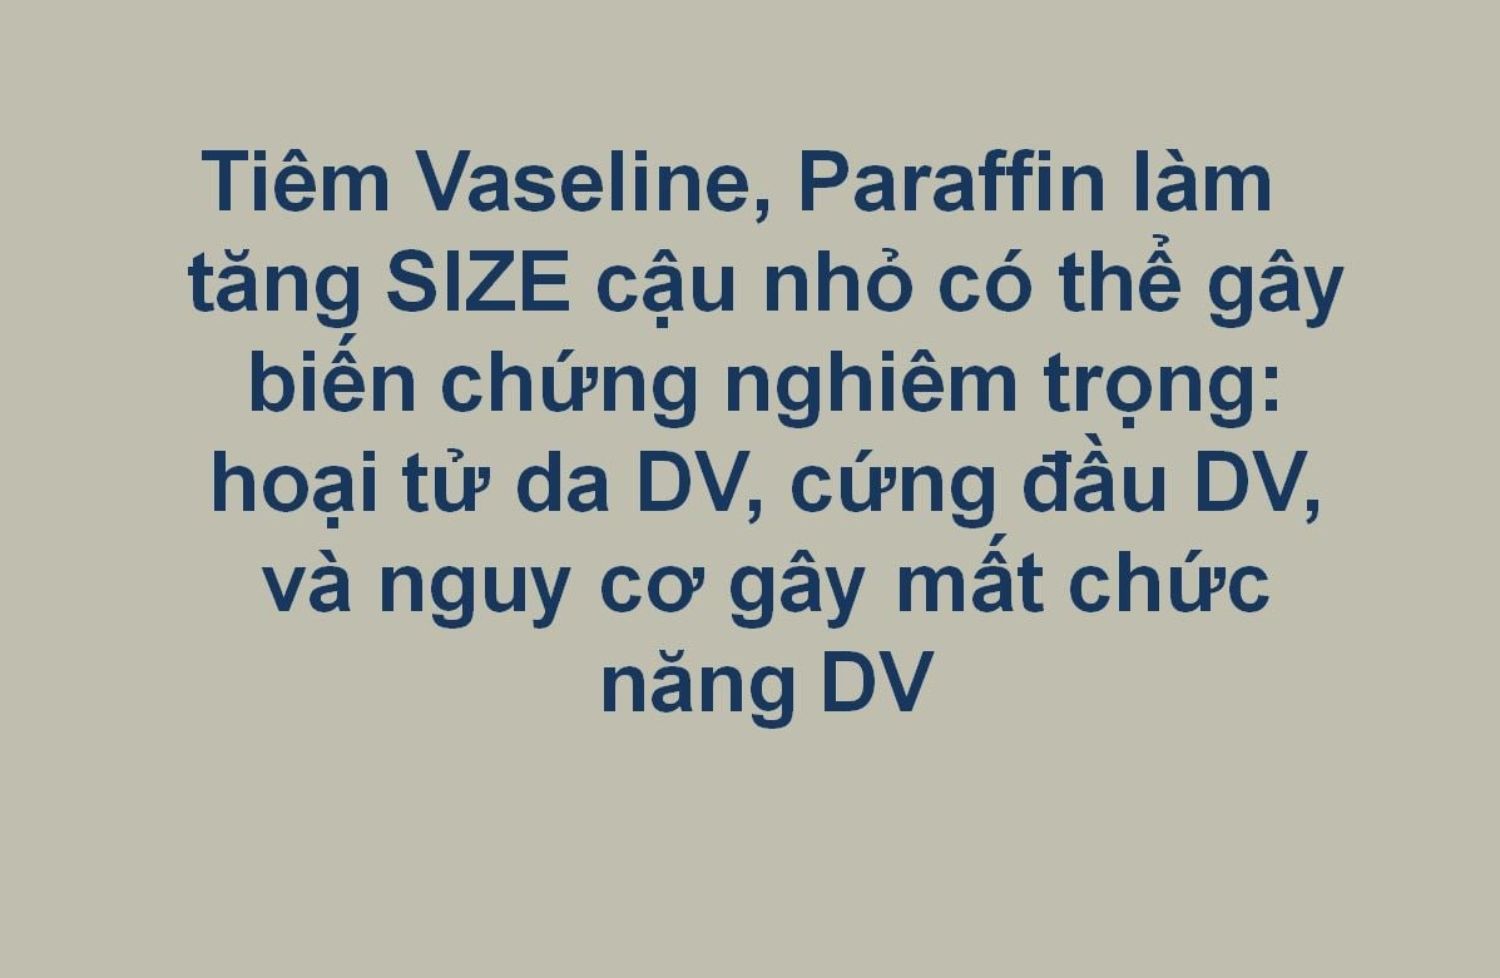 Hậu quả khó lường khi tiêm vaselin, parafin tăng size cậu nhỏ